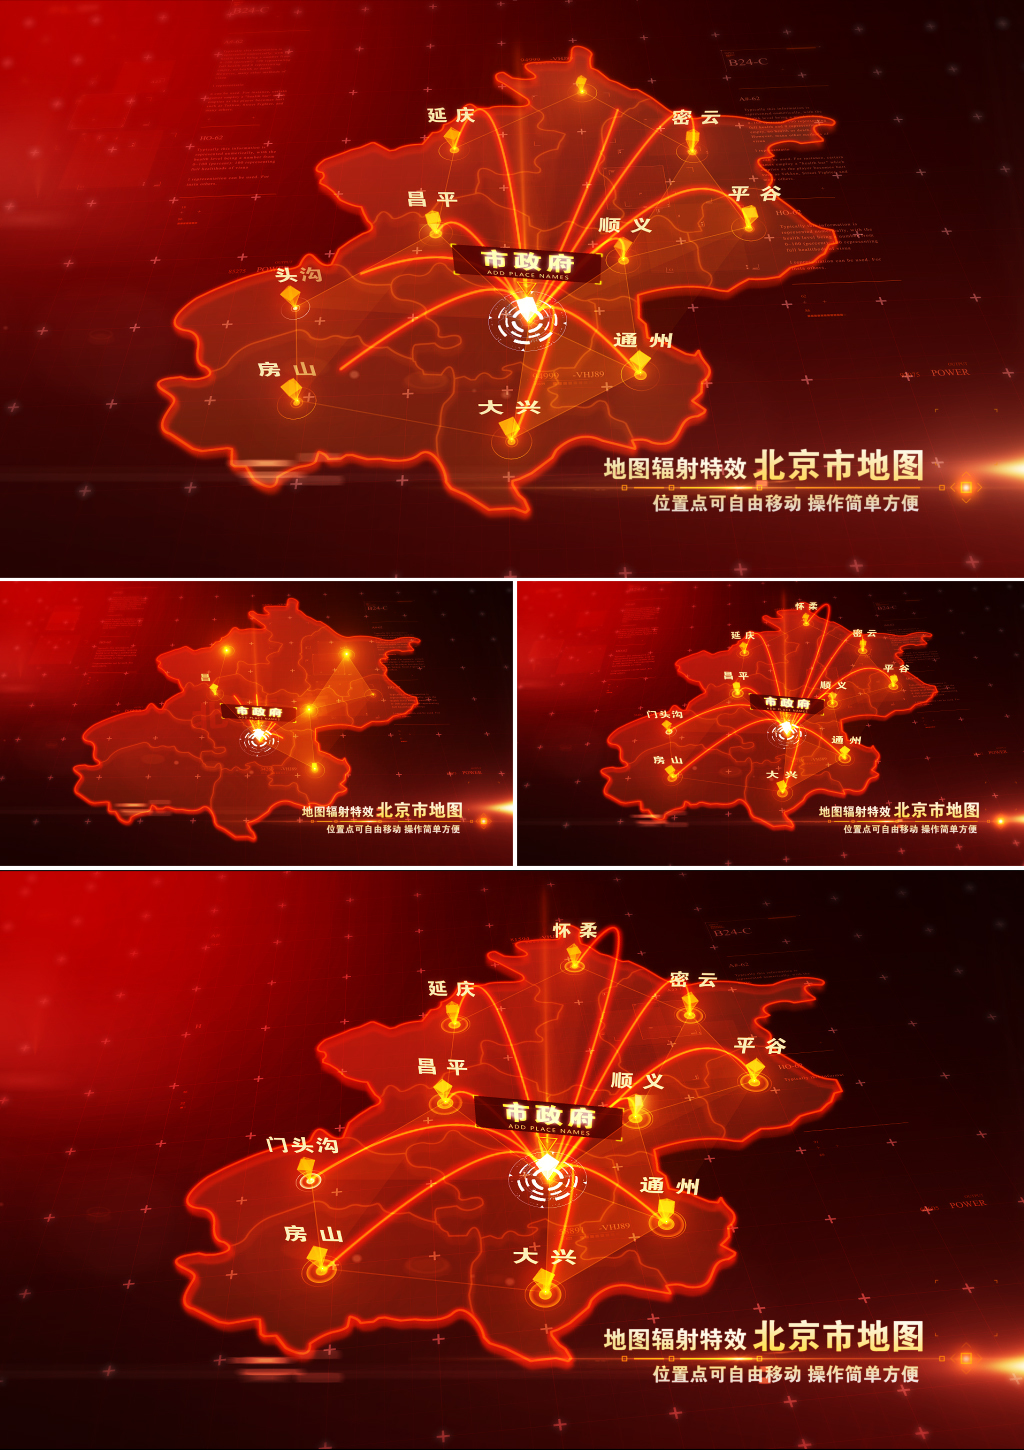 北京市地图定位辐射地图